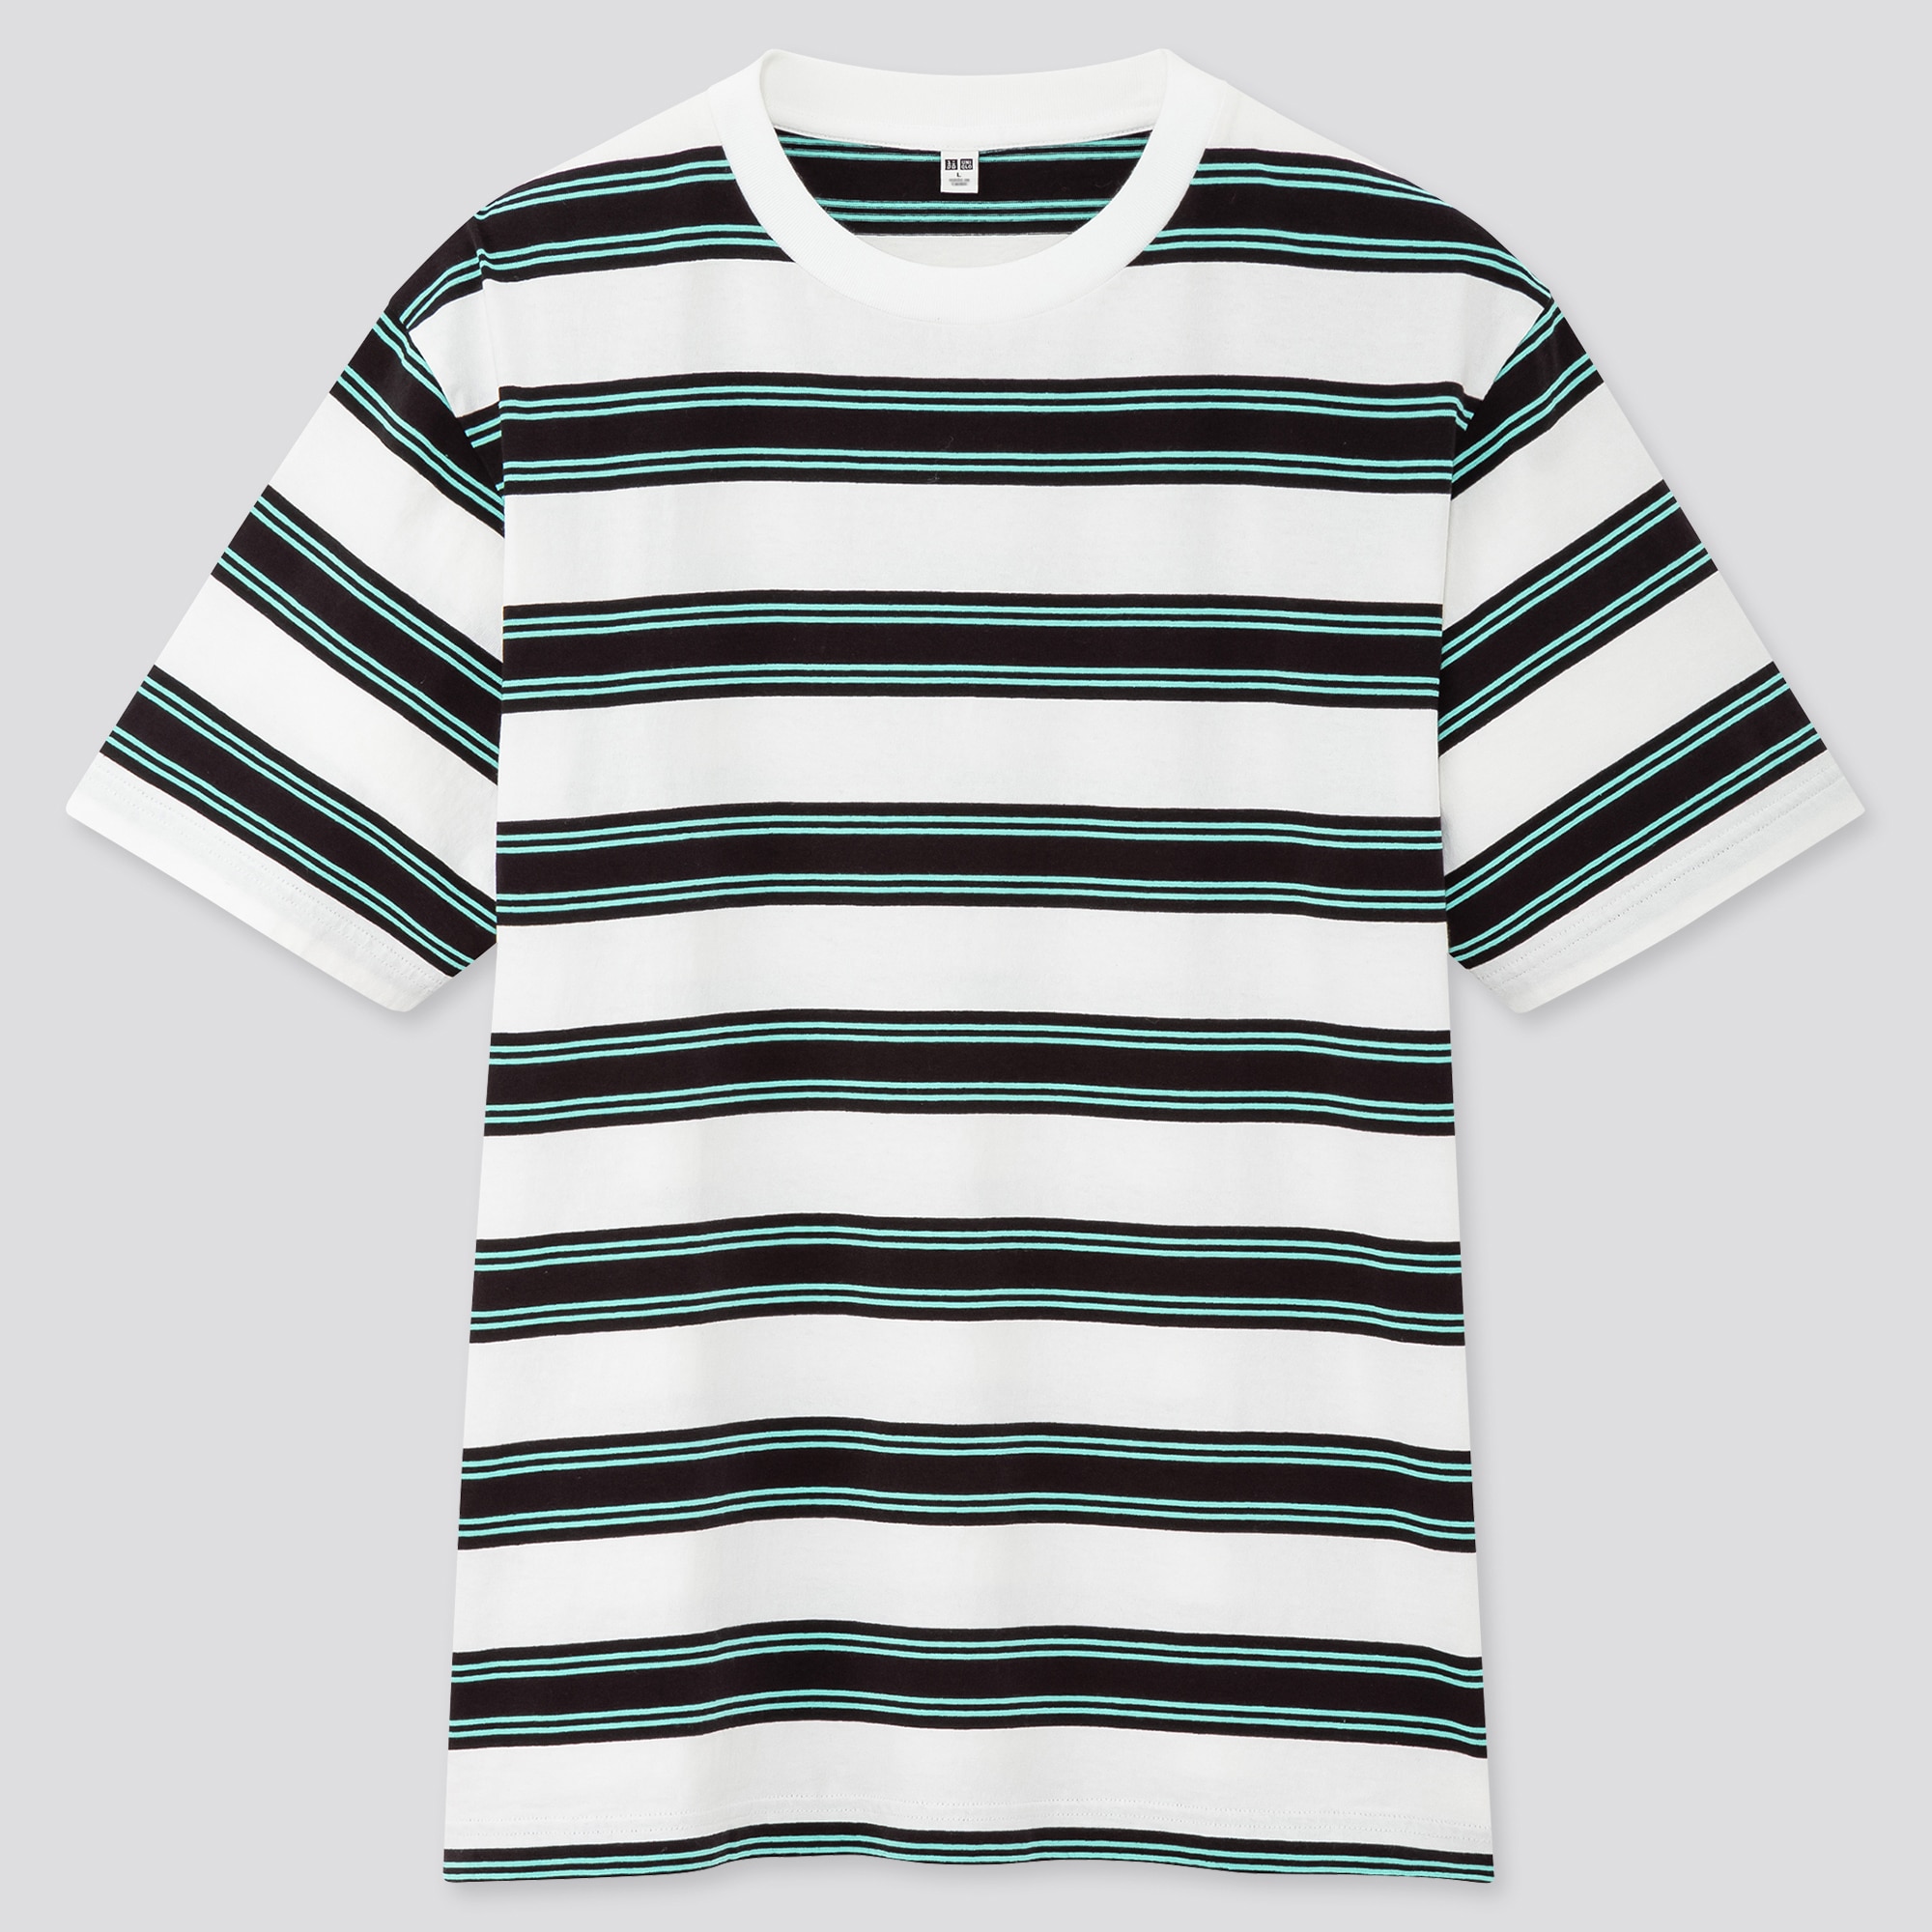 ユニクロ ボーダー 半袖 トップス Tシャツ フレンチスリーブ Tシャツ/カットソー(半袖/袖なし) 品質は非常に良い